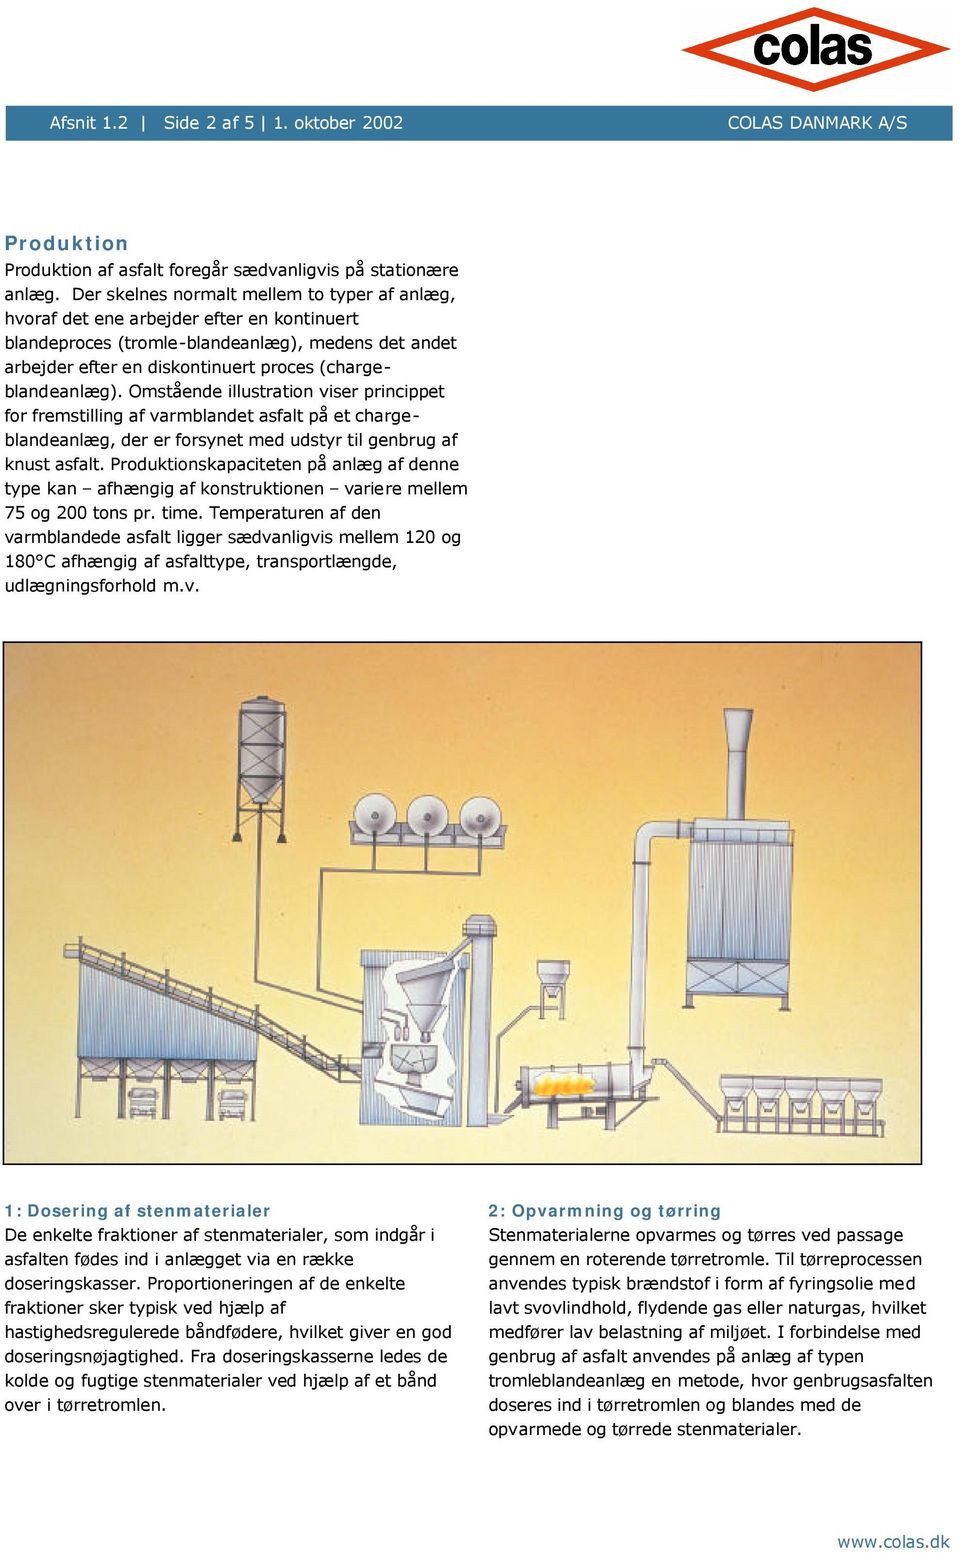 (chargeblandeanlæg). Omstående illustration viser princippet for fremstilling af varmblandet asfalt på et chargeblandeanlæg, der er forsynet med udstyr til genbrug af knust asfalt.